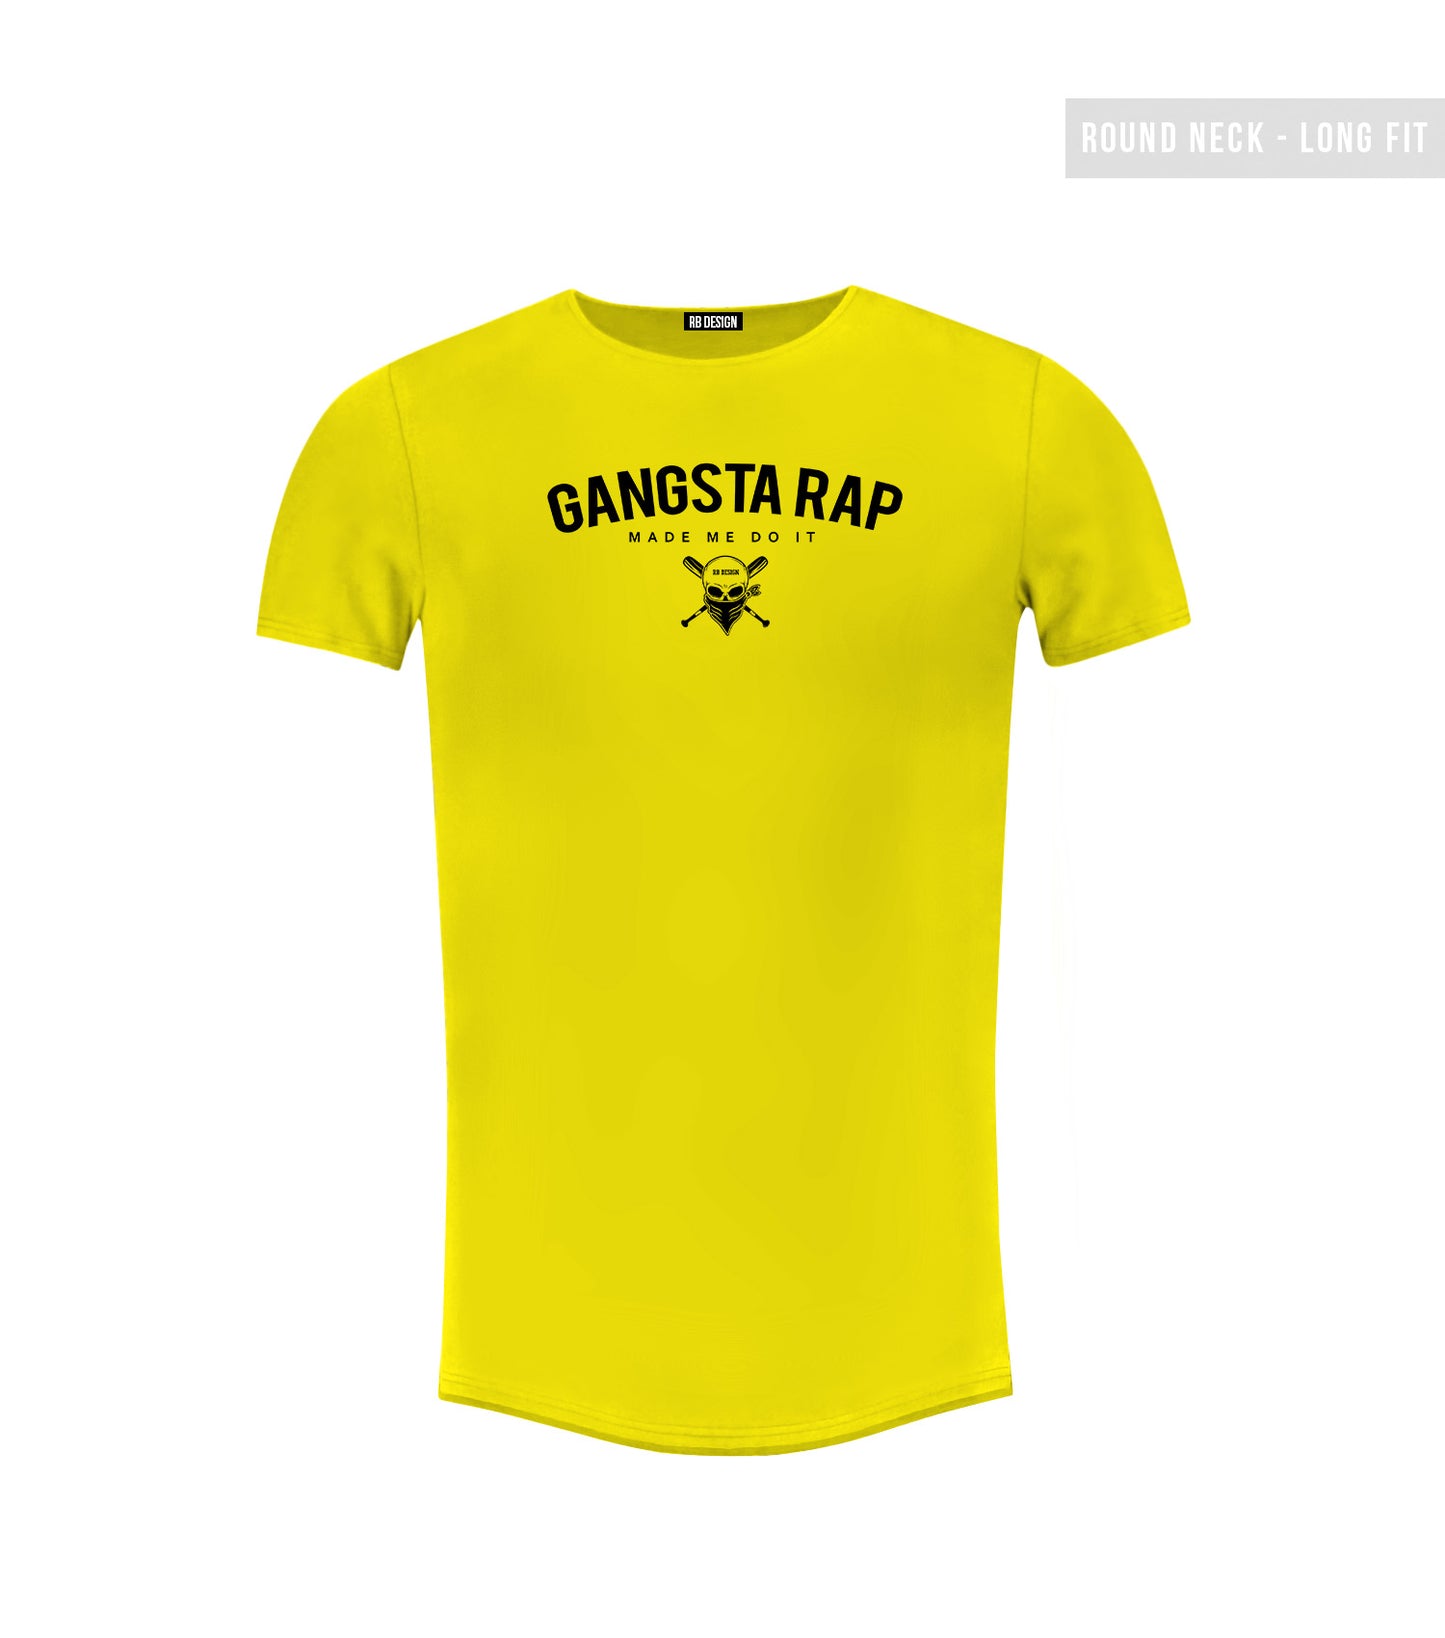 Men's  T-shirt "Gangsta Rap Made Me Do it" Long Fit MD929